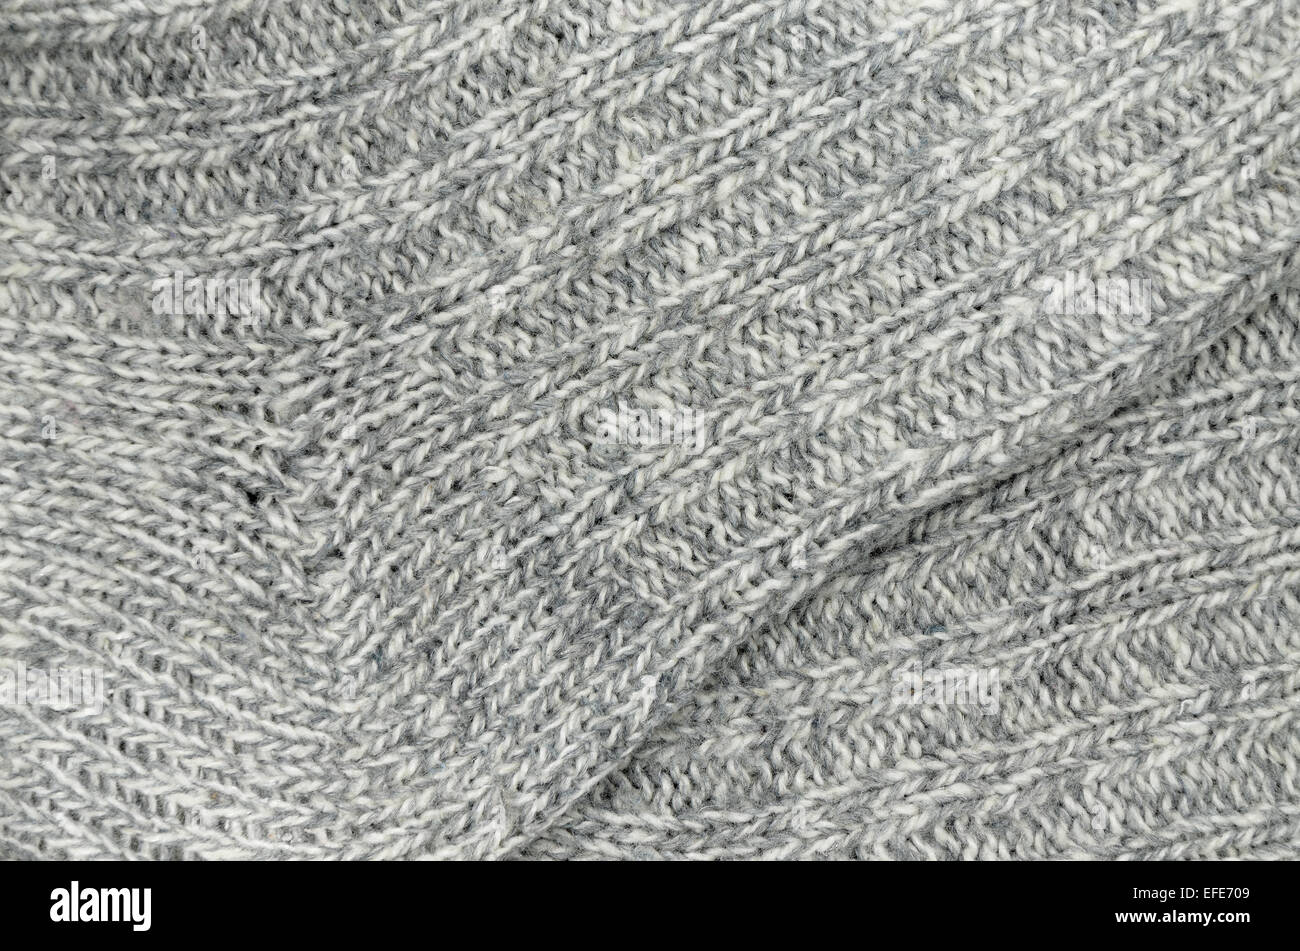 Cerca de dos grises y blancos y calcetines tejidos a rayas moteadas, full frame Foto de stock